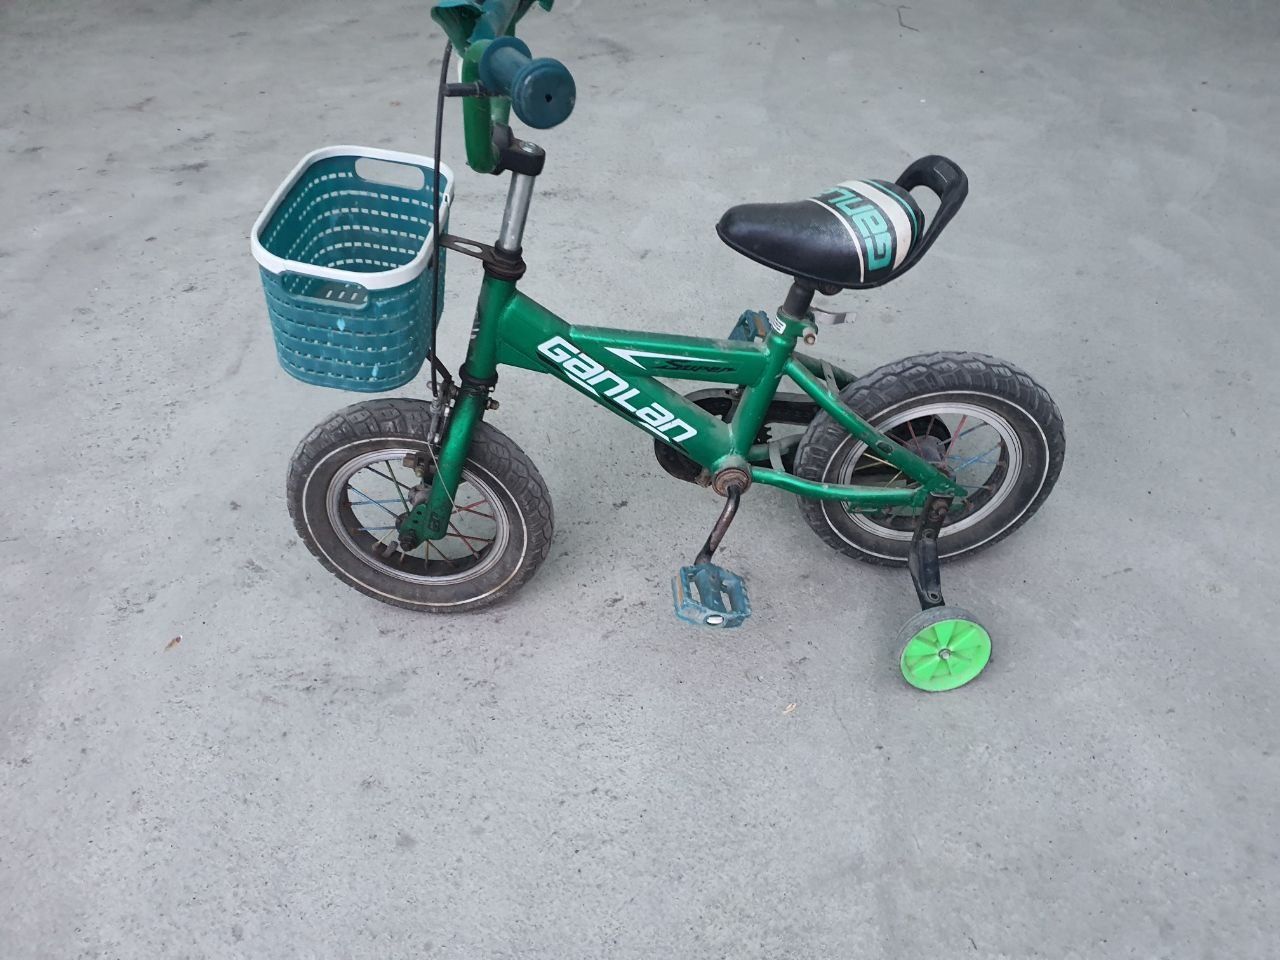 Деткий велосипед продана